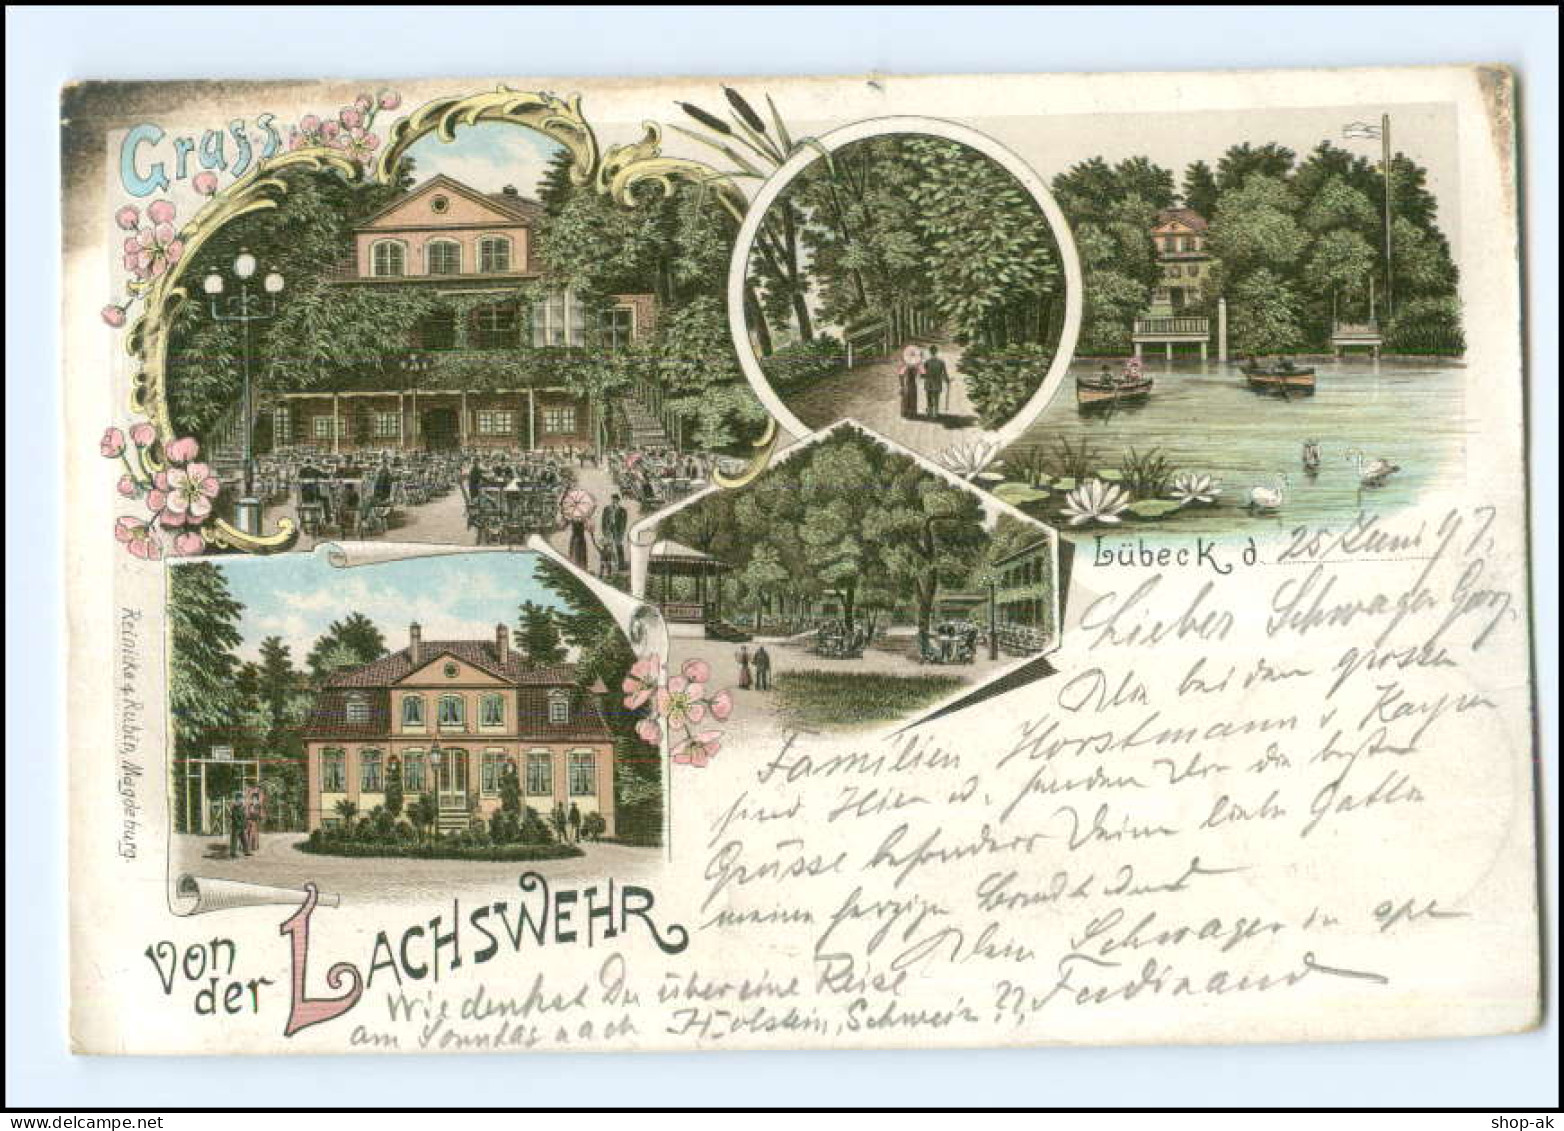 V1448/ Lübeck  Gruß Von Der Lachswehr  Litho AK 1897 - Lübeck-Travemünde